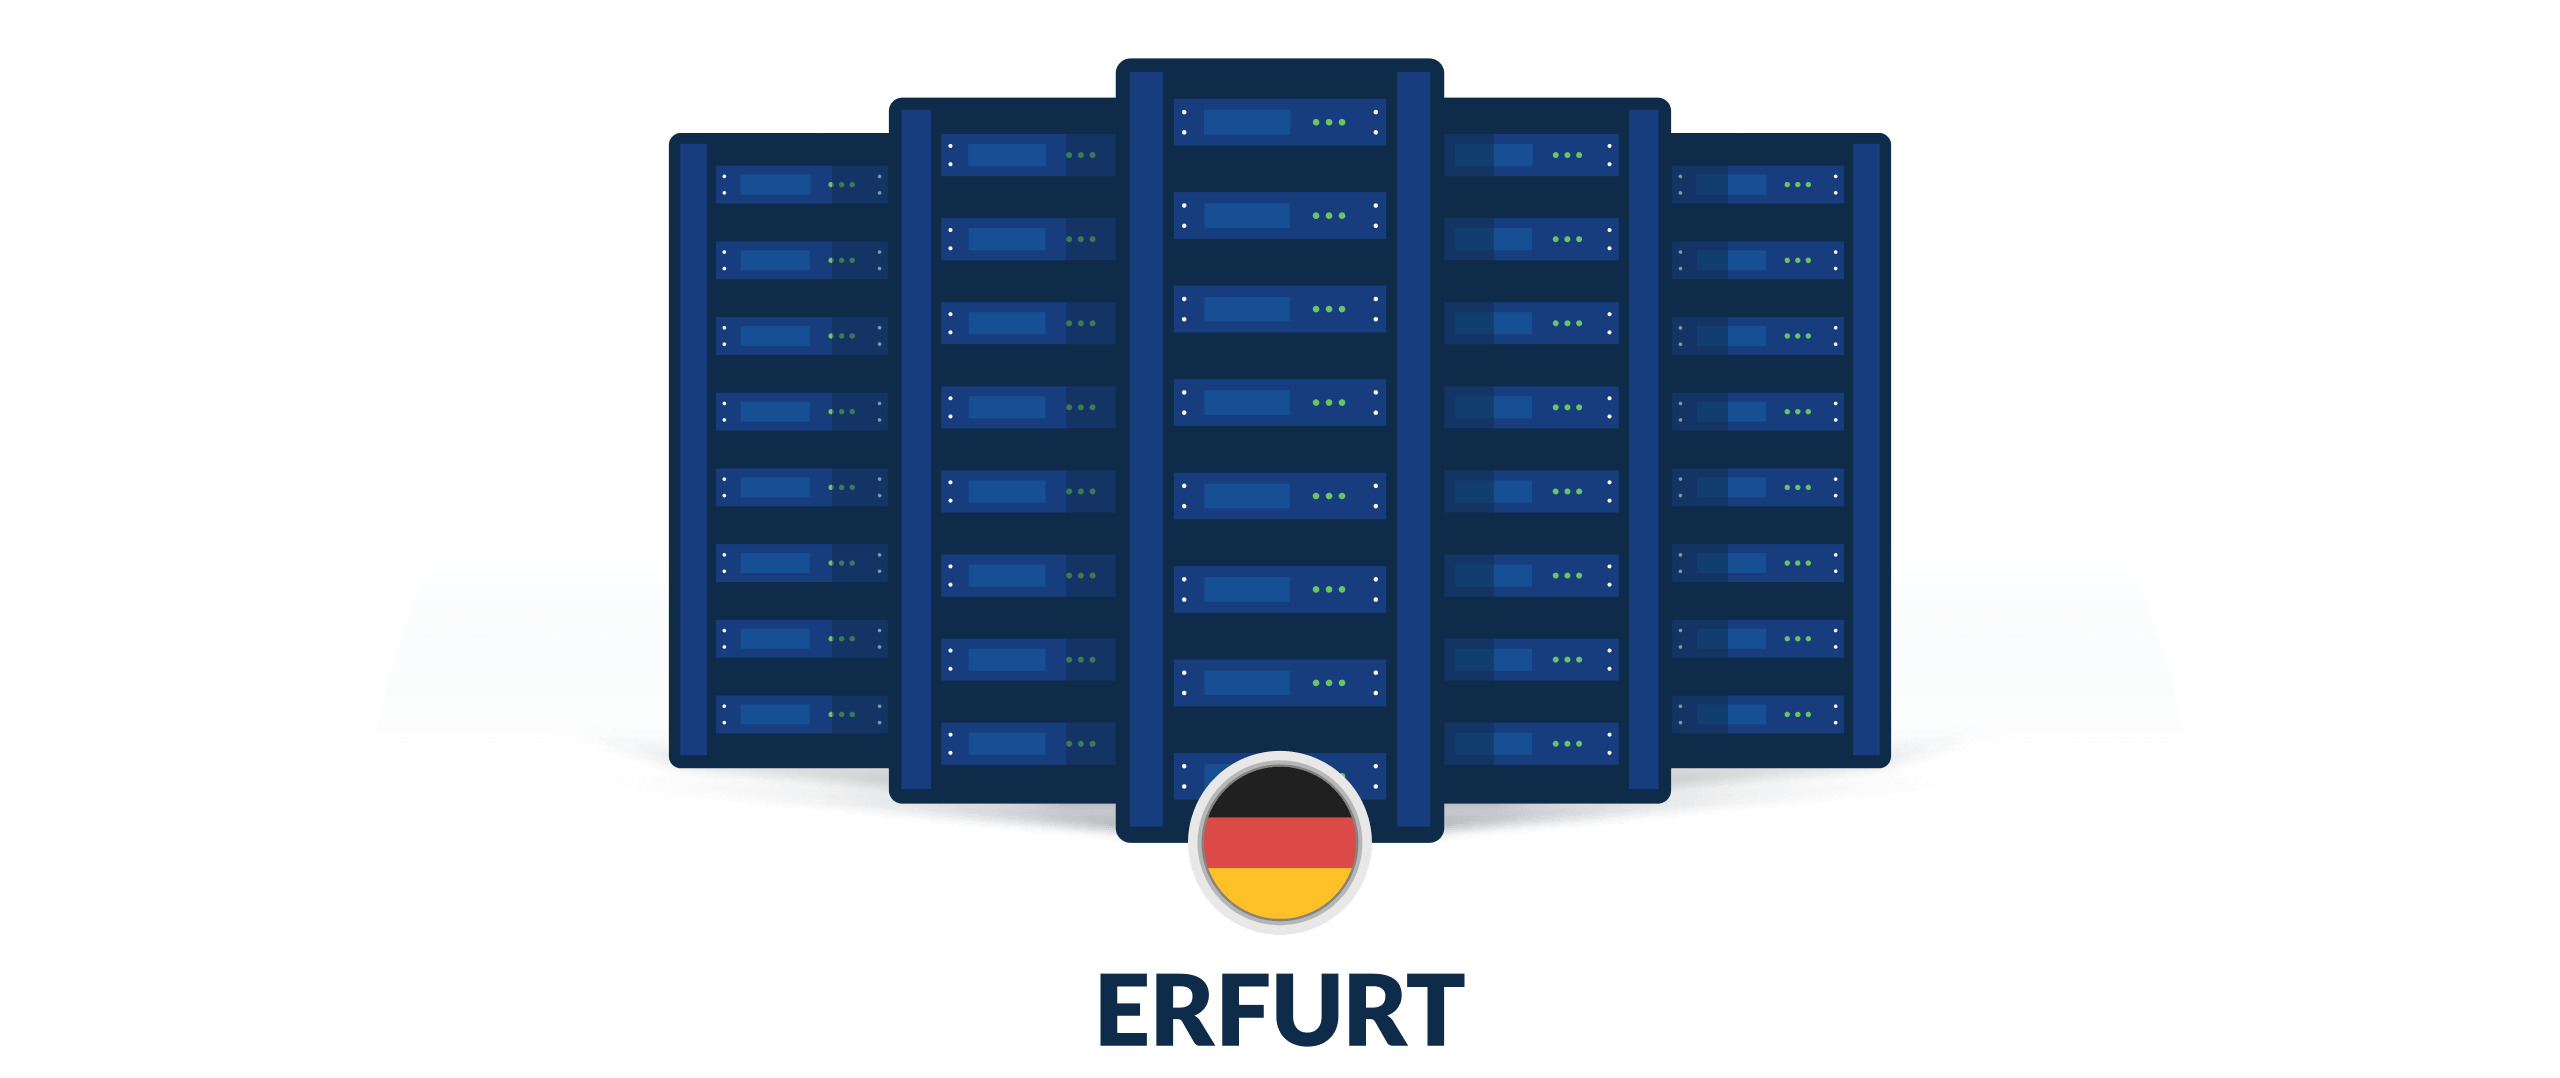 VPN servers in Erfurt, Germany